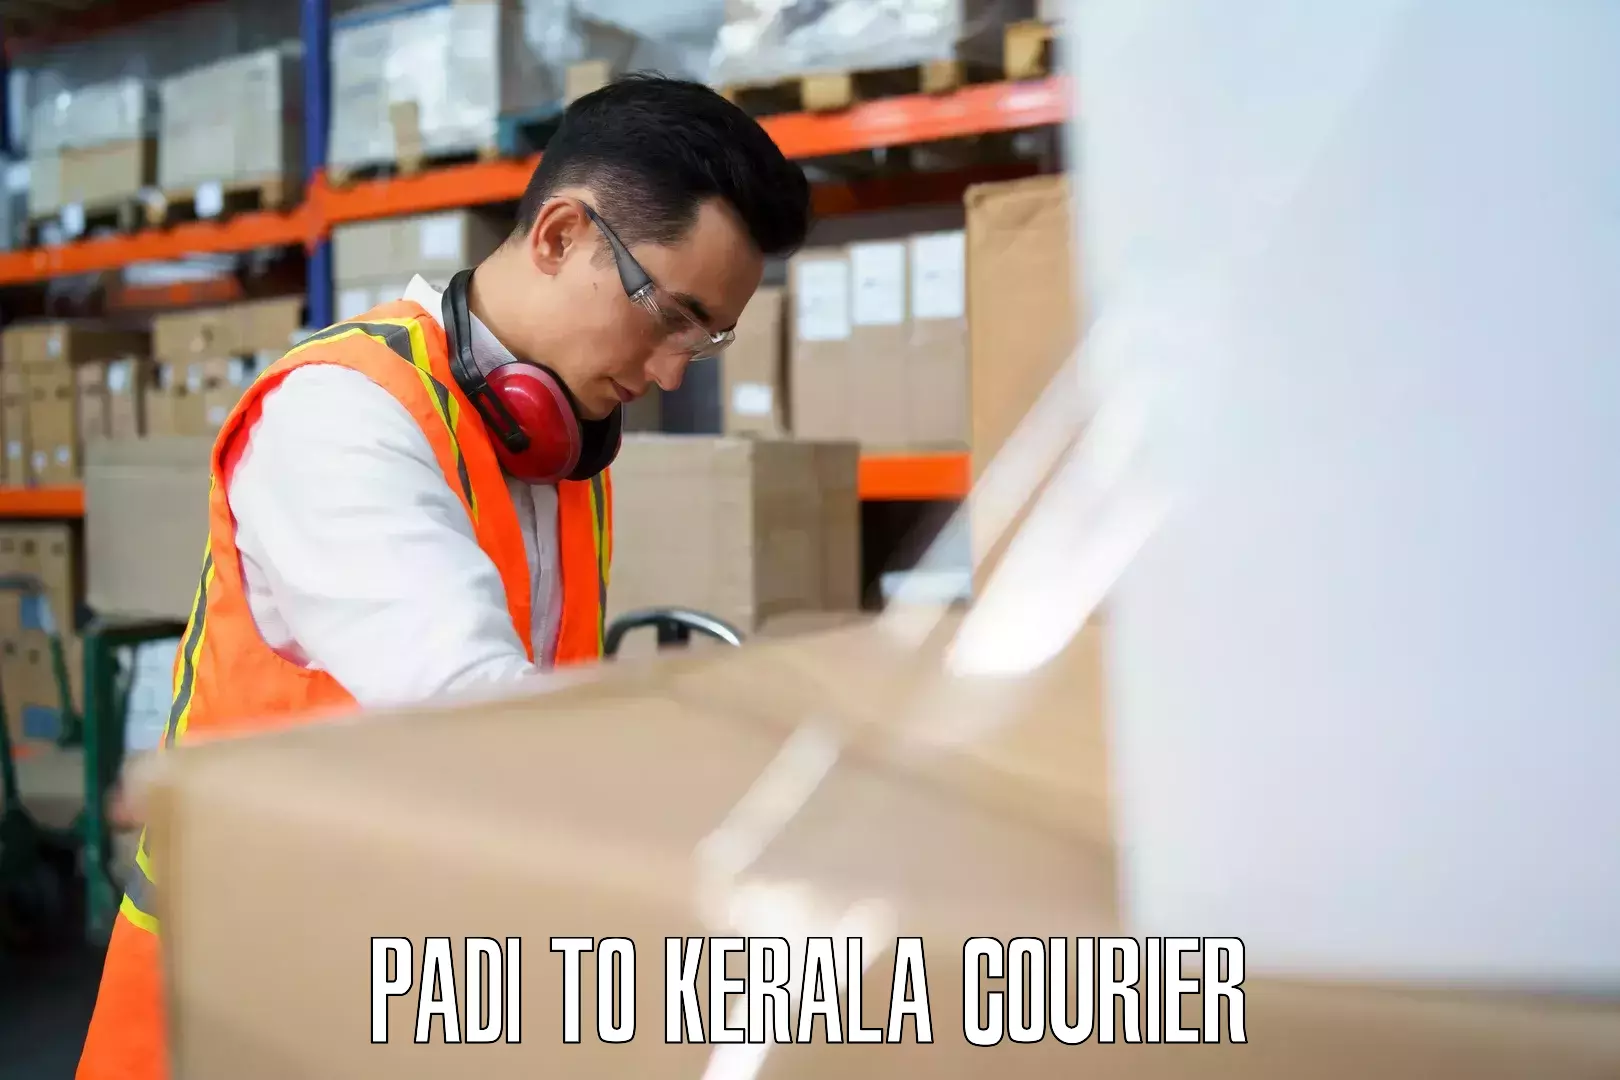 Luggage shipment specialists Padi to Kuthiathode